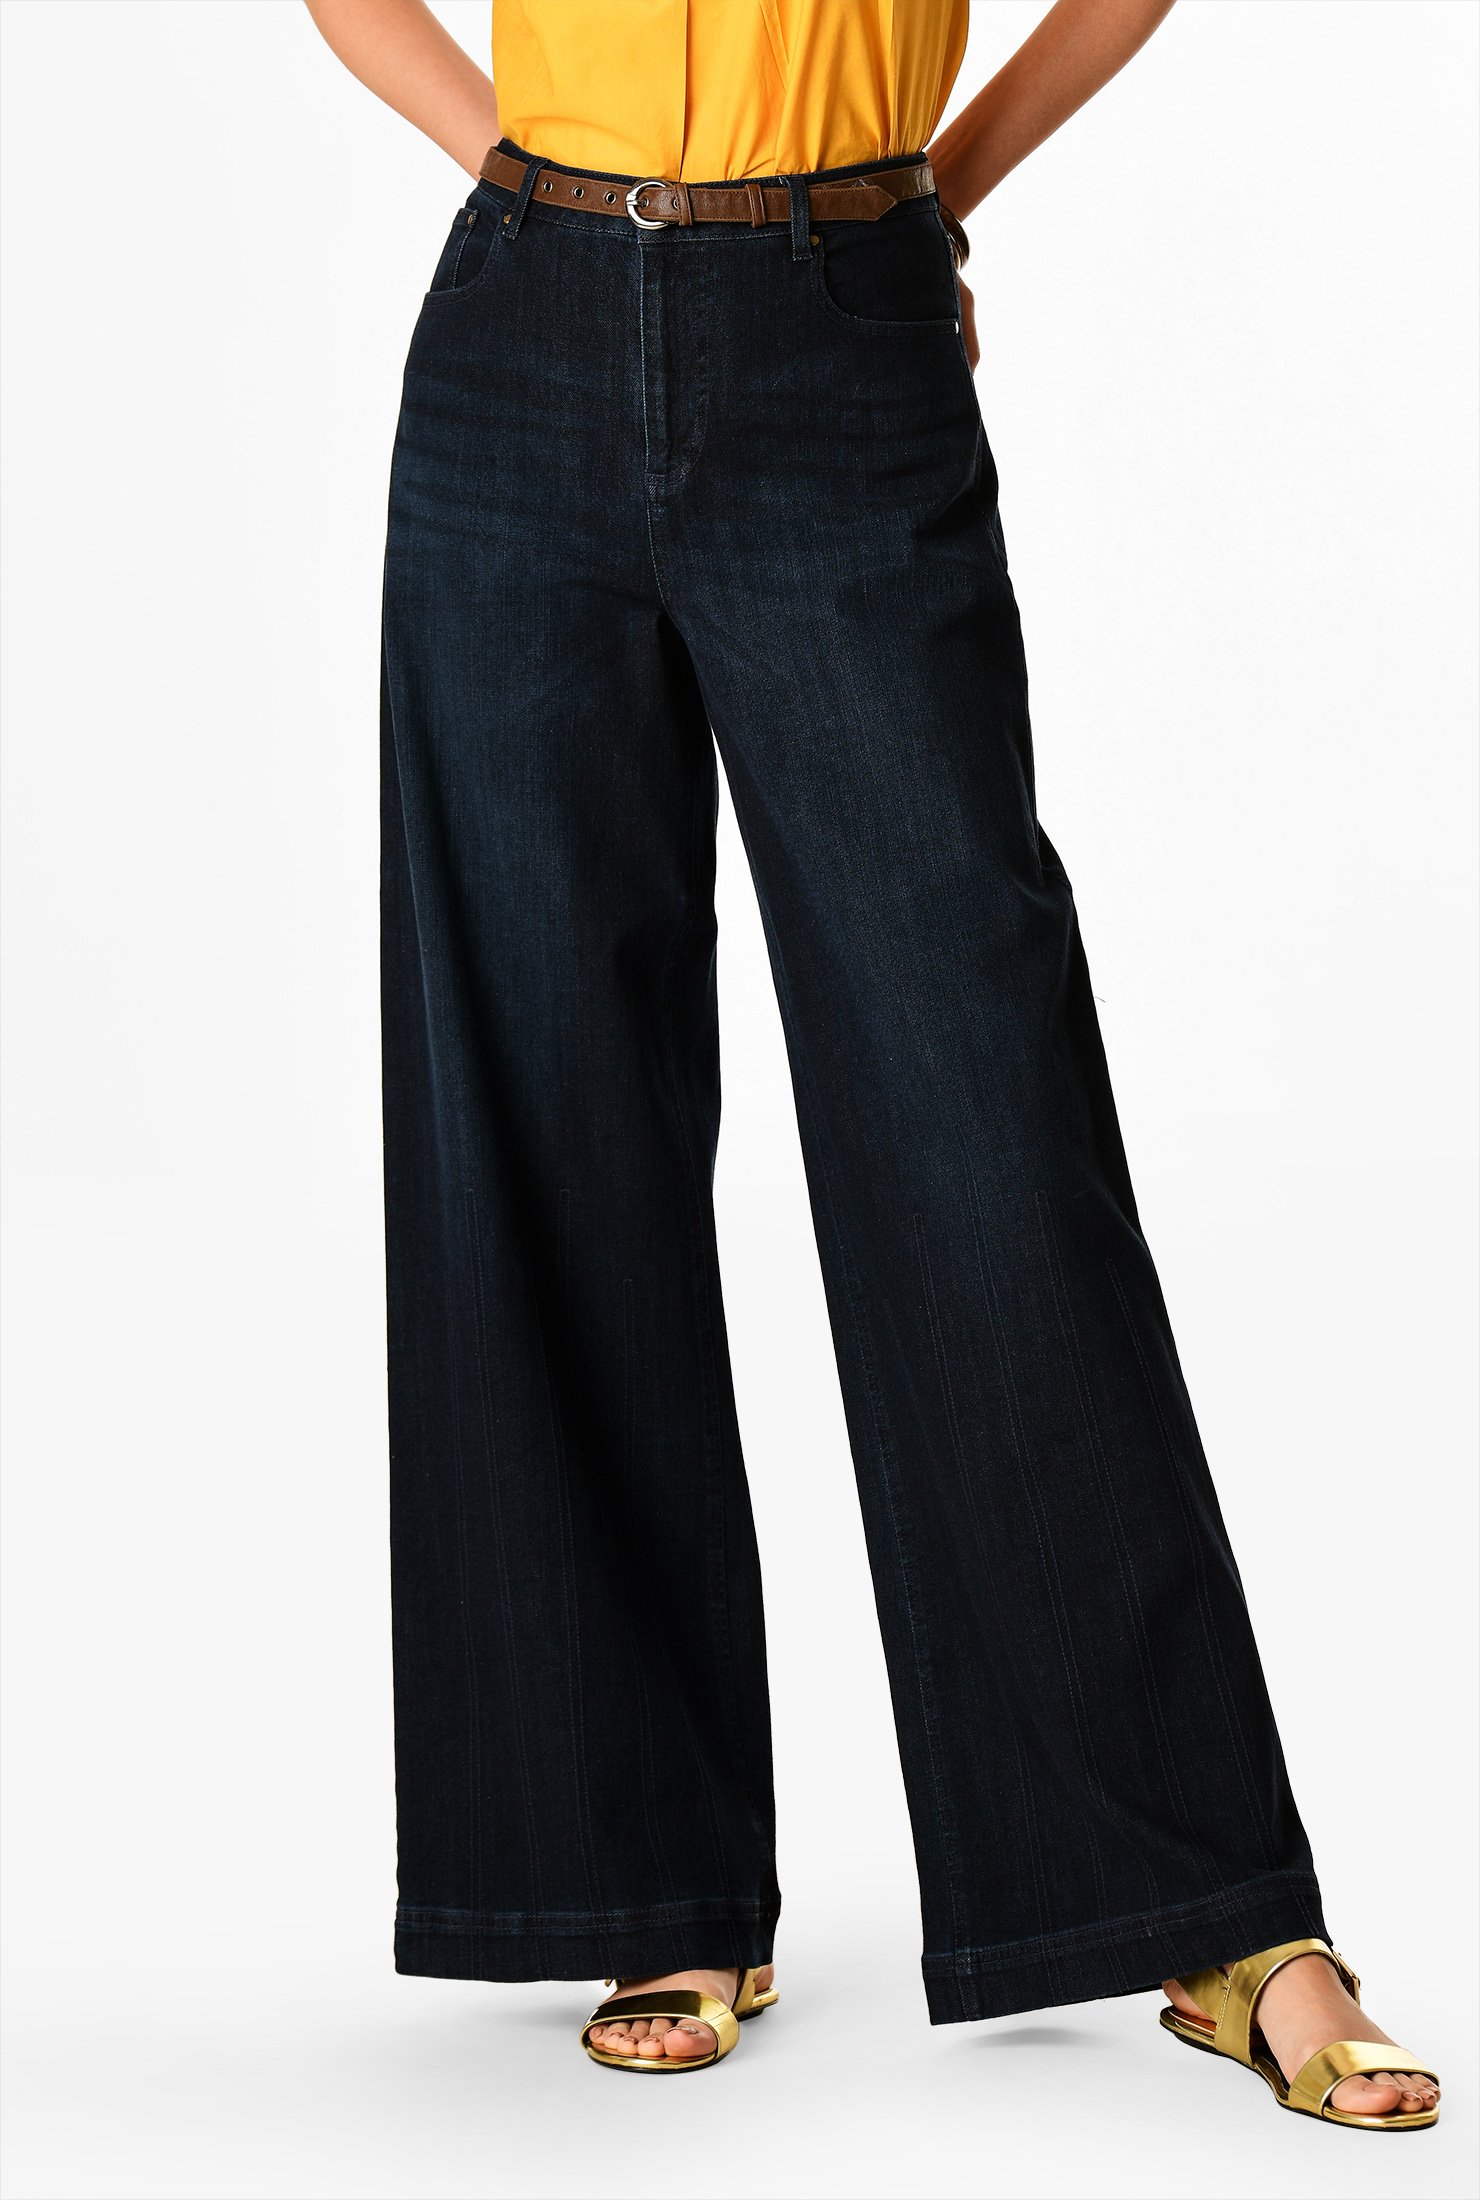 Shop Wide leg denim jeans | eShakti